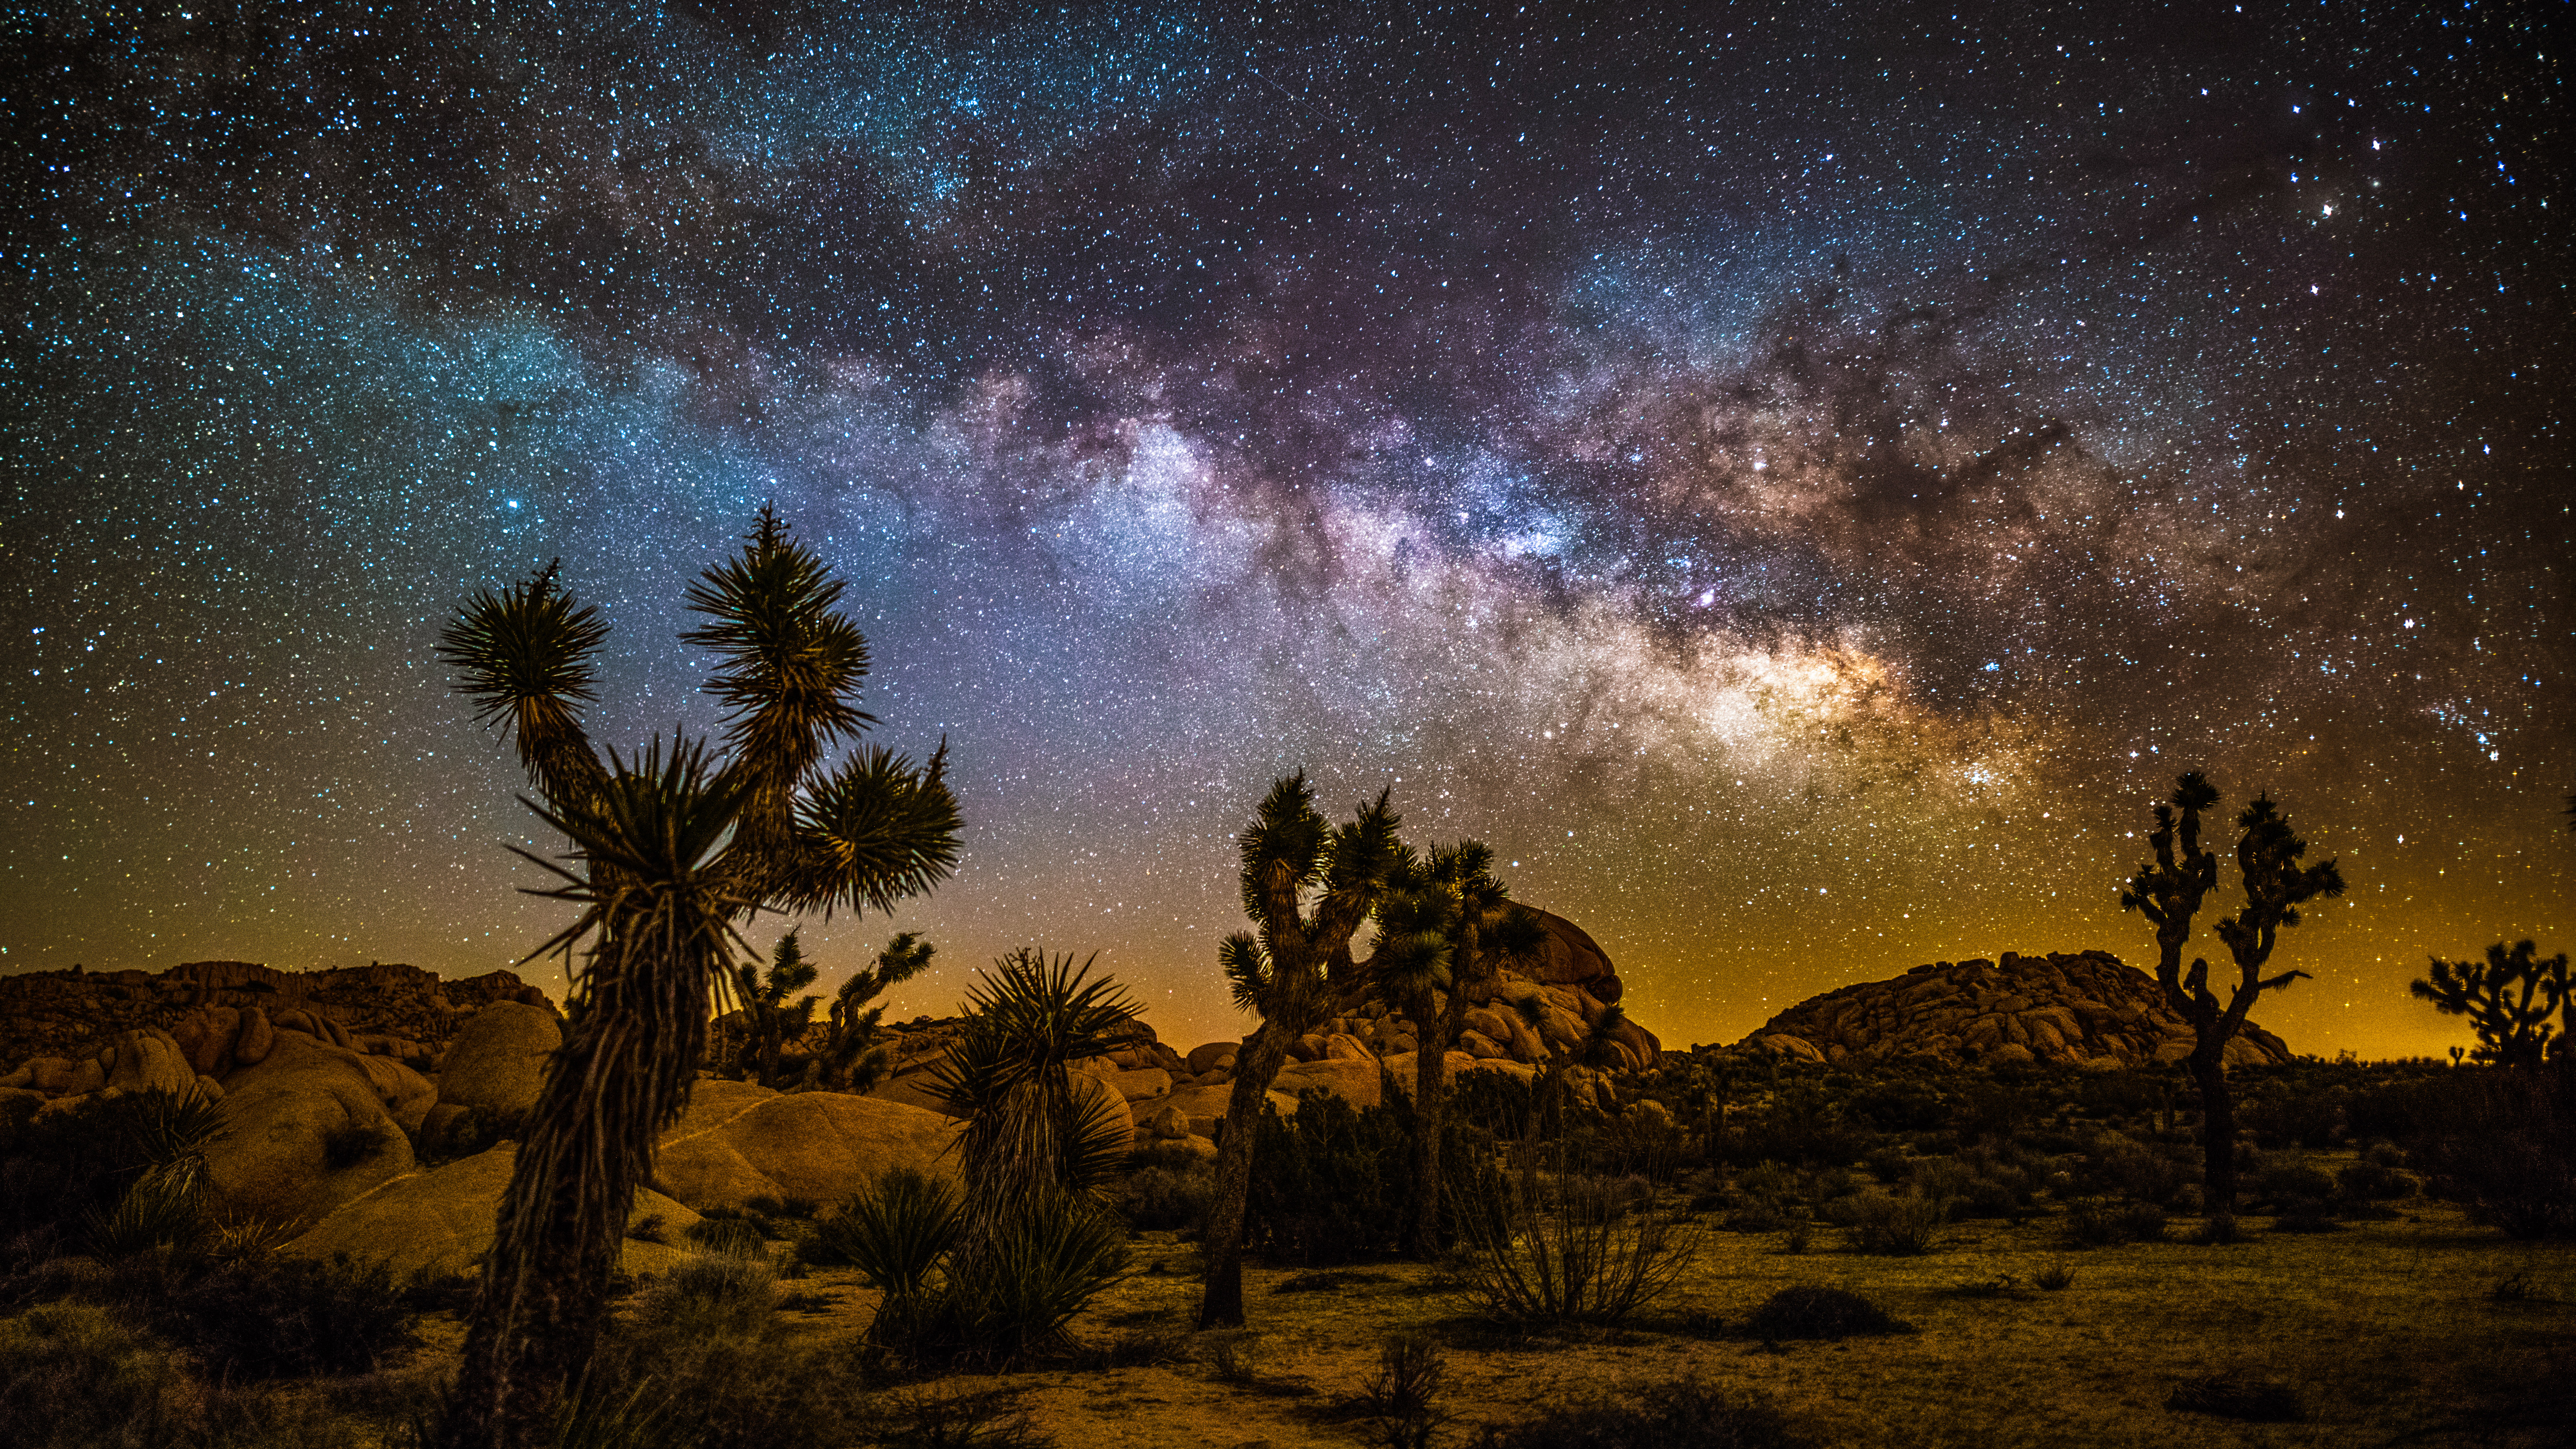 المناظر الطبيعية الليلية مع درب التبانة الملونة فوق صحراء حديقة جوشوا تري الوطنية في كاليفورنيا ، الولايات المتحدة الأمريكية.